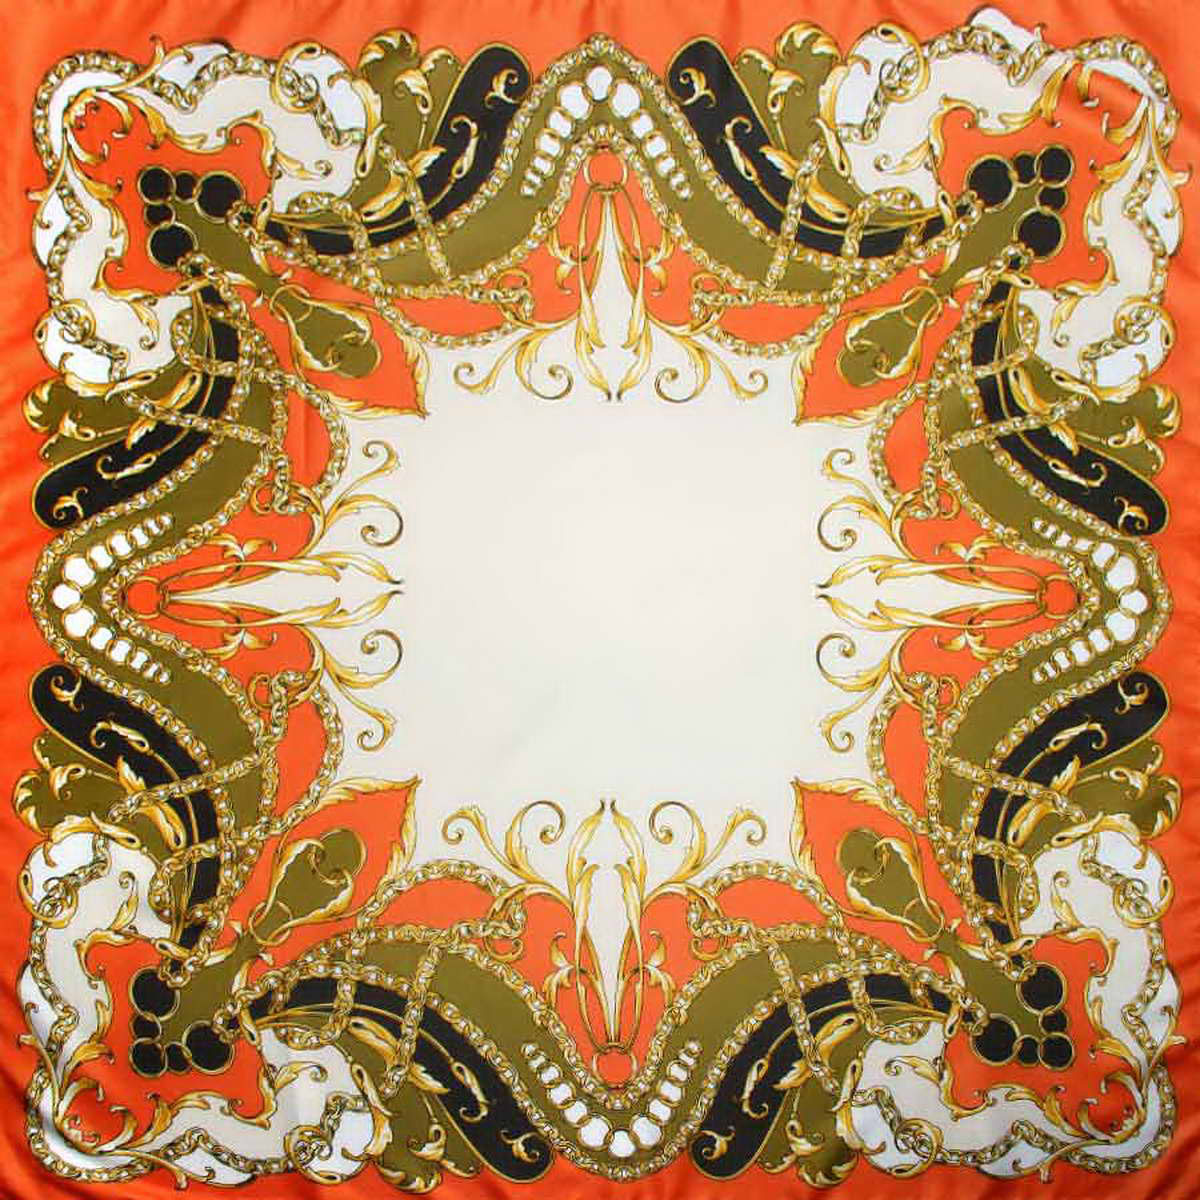 Платок женский Venera, цвет: оранжевый, оливковый, кремовый. 3904972-27. Размер 90 см х 90 см